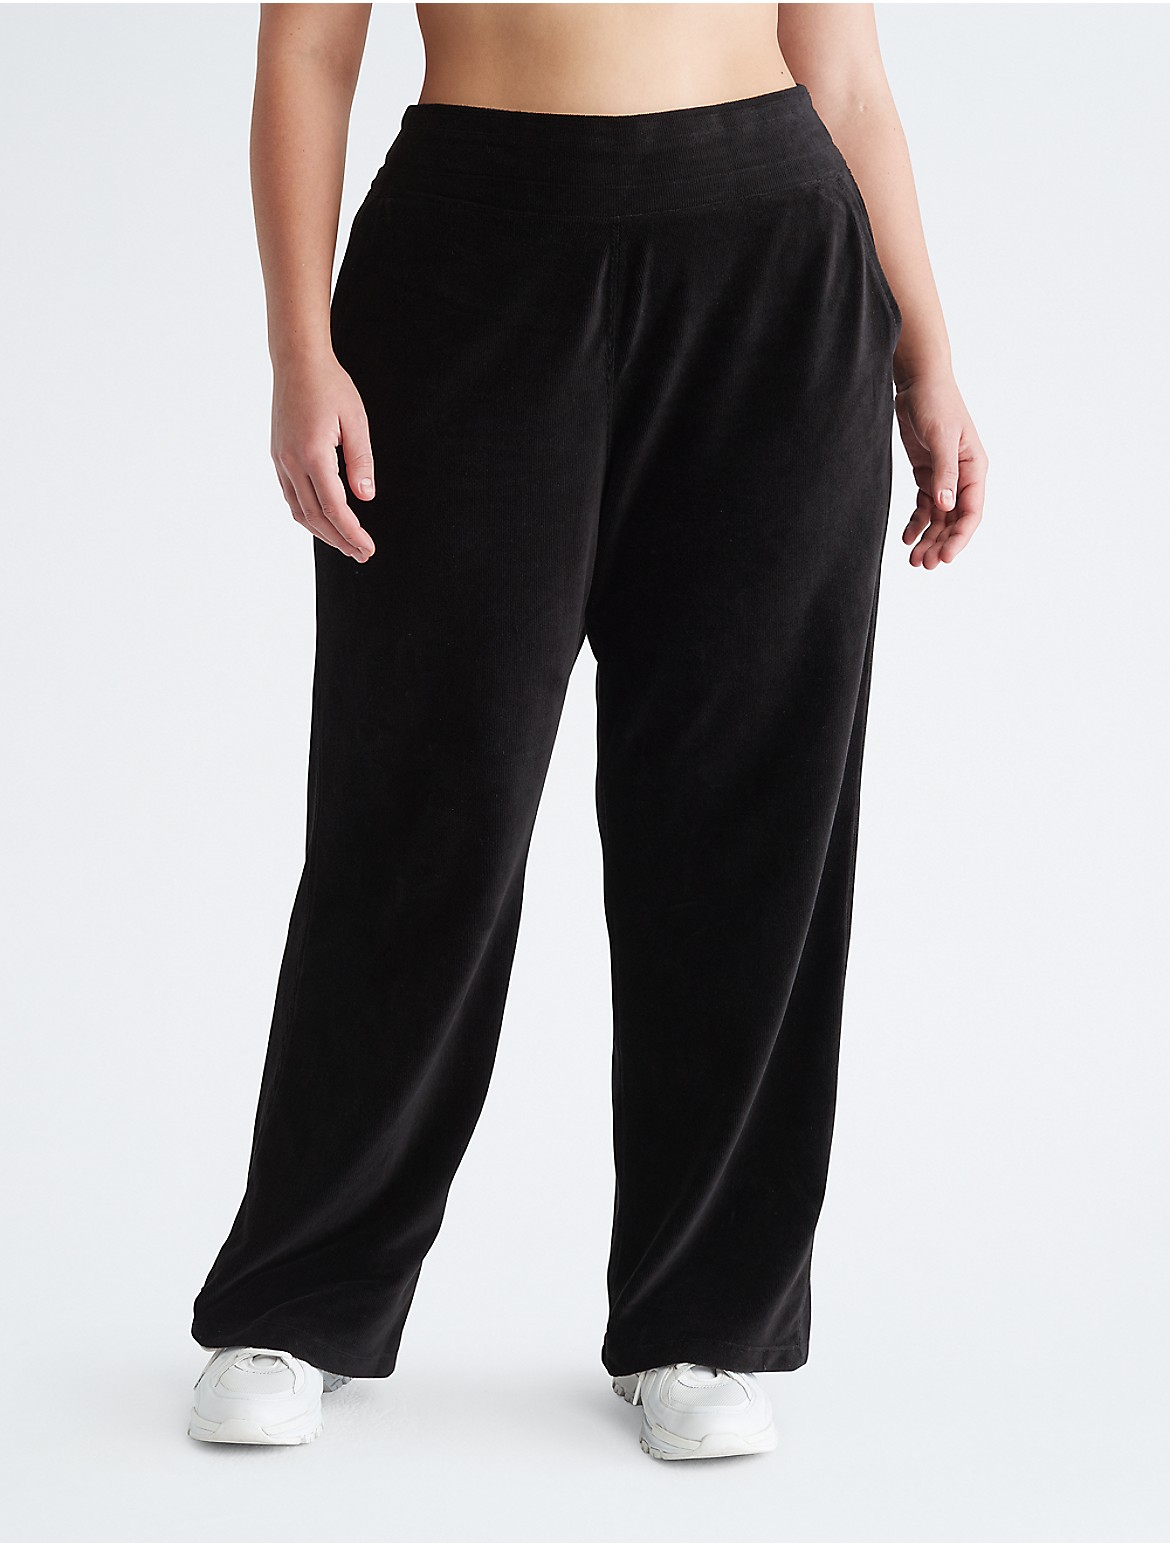 Calvin Klein Women's Plus Size Performance Wide Leg Pants - Black - 3X